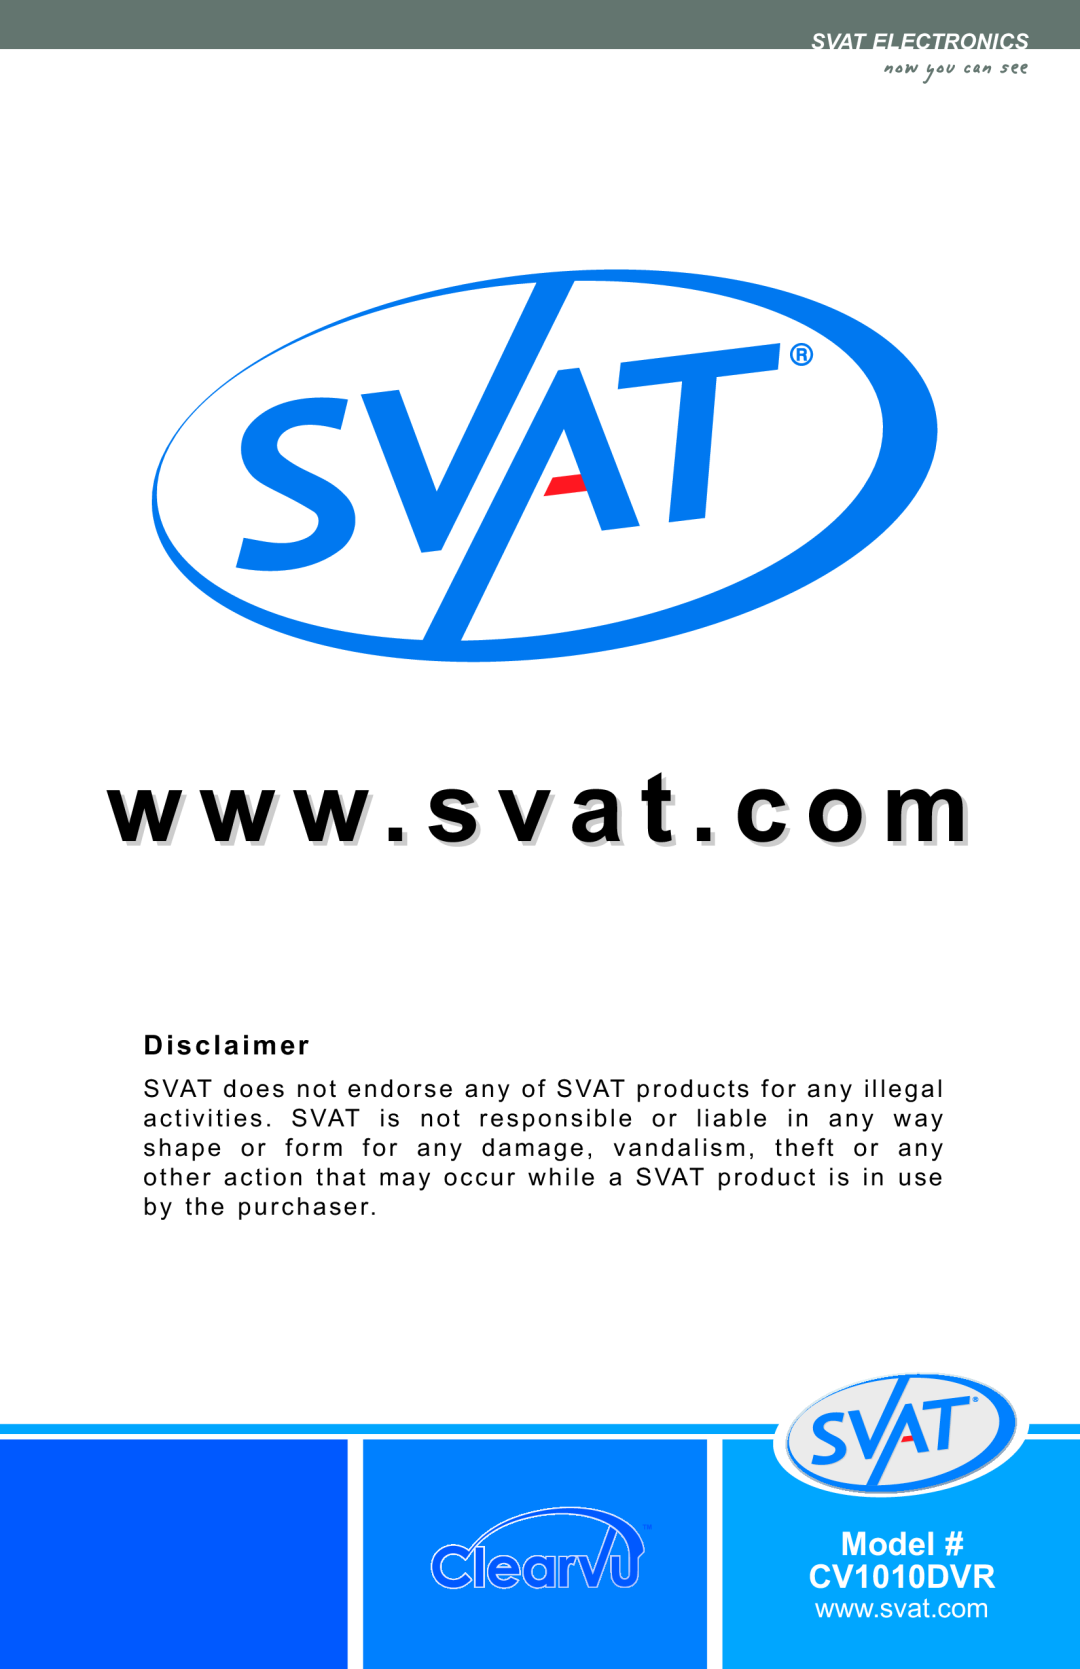 SVAT Electronics w w w. s v a t . c o m, now you can see, Model # CV1010DVR, Disclaimer, Svat Electronics 